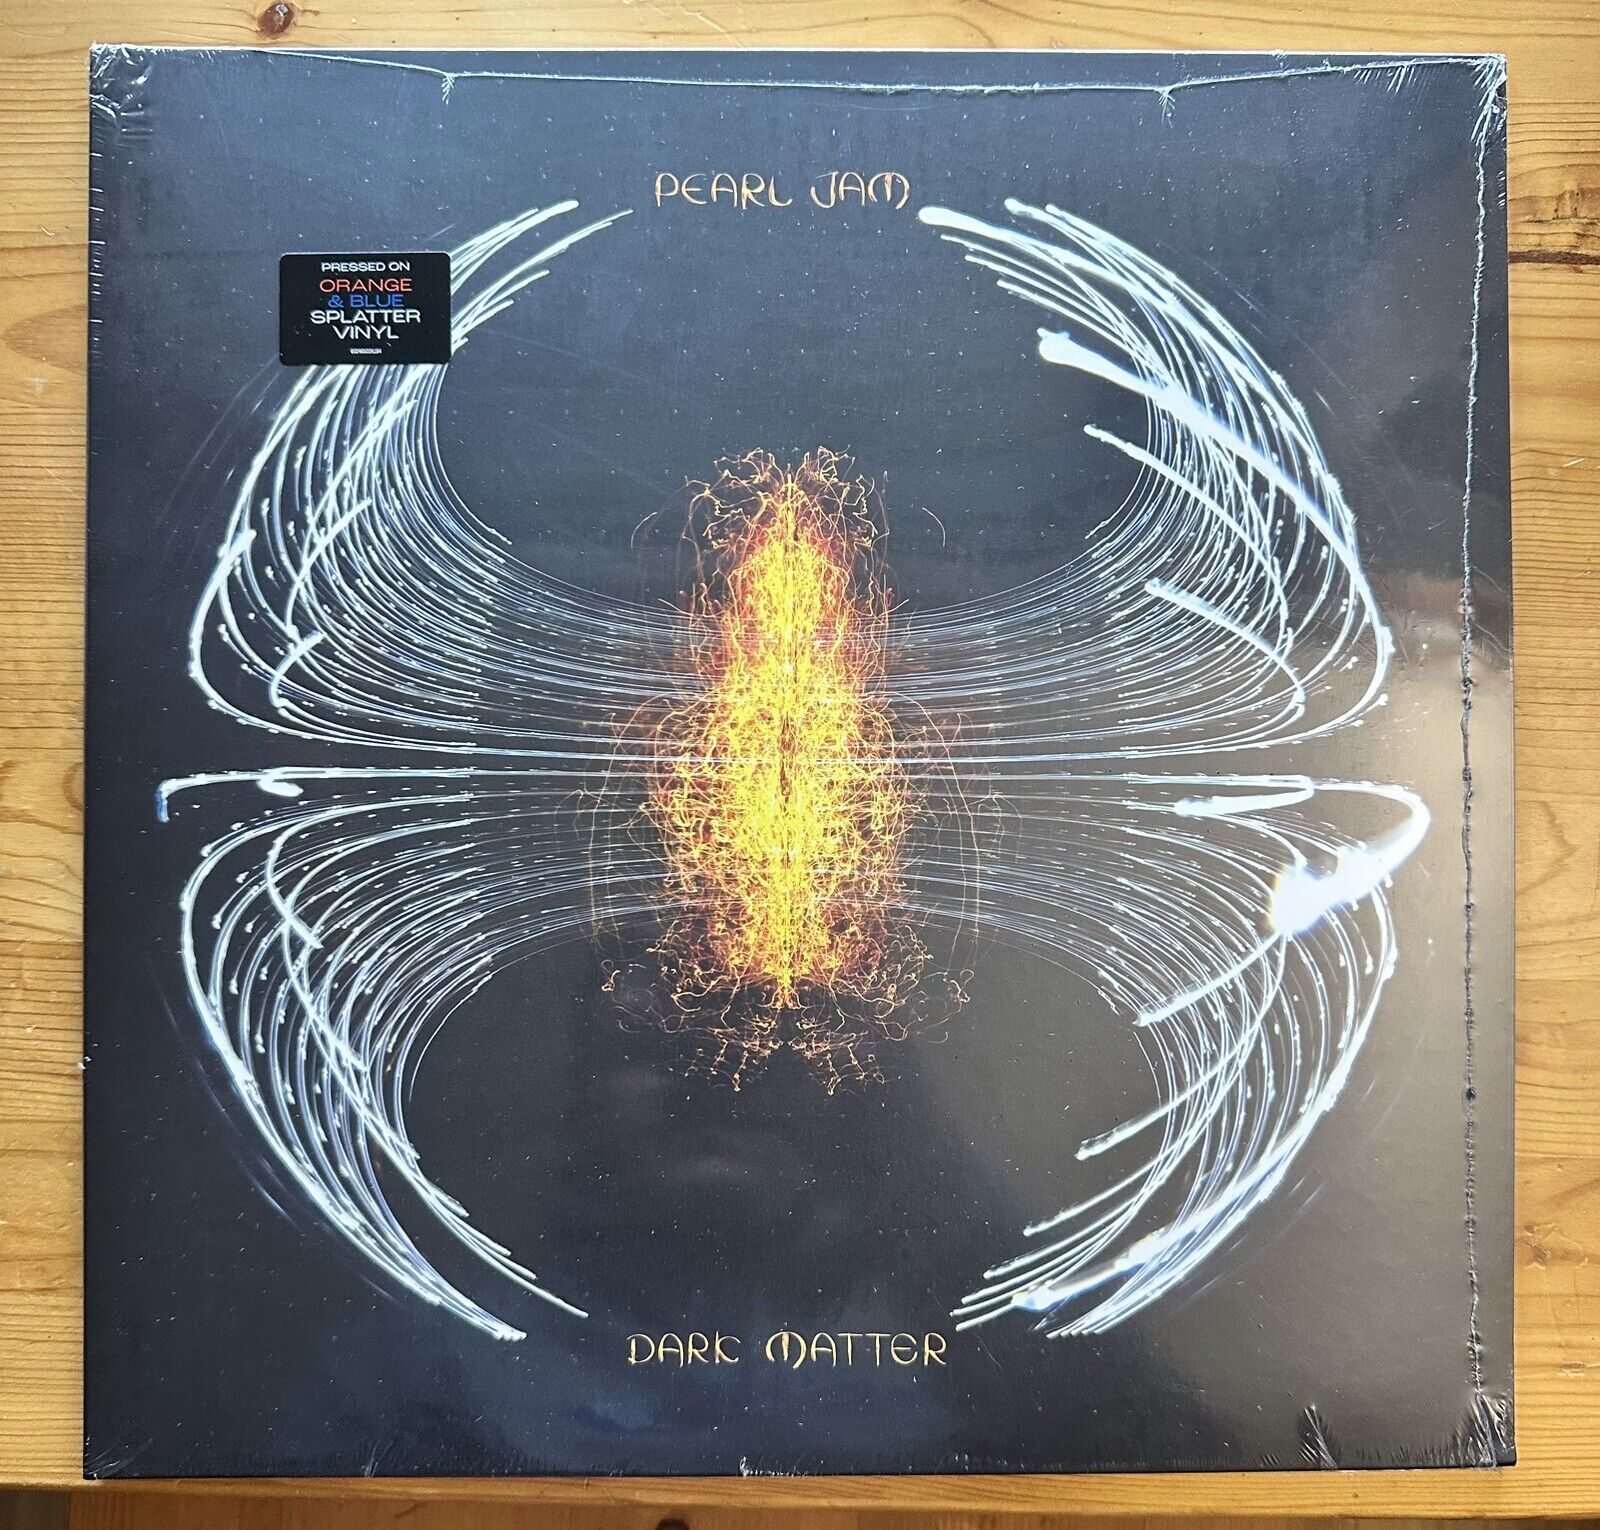 Pearl Jam Dark Matter Vinyl LP - RSD - NEW YORK Variant - Orange/Blue Splatter